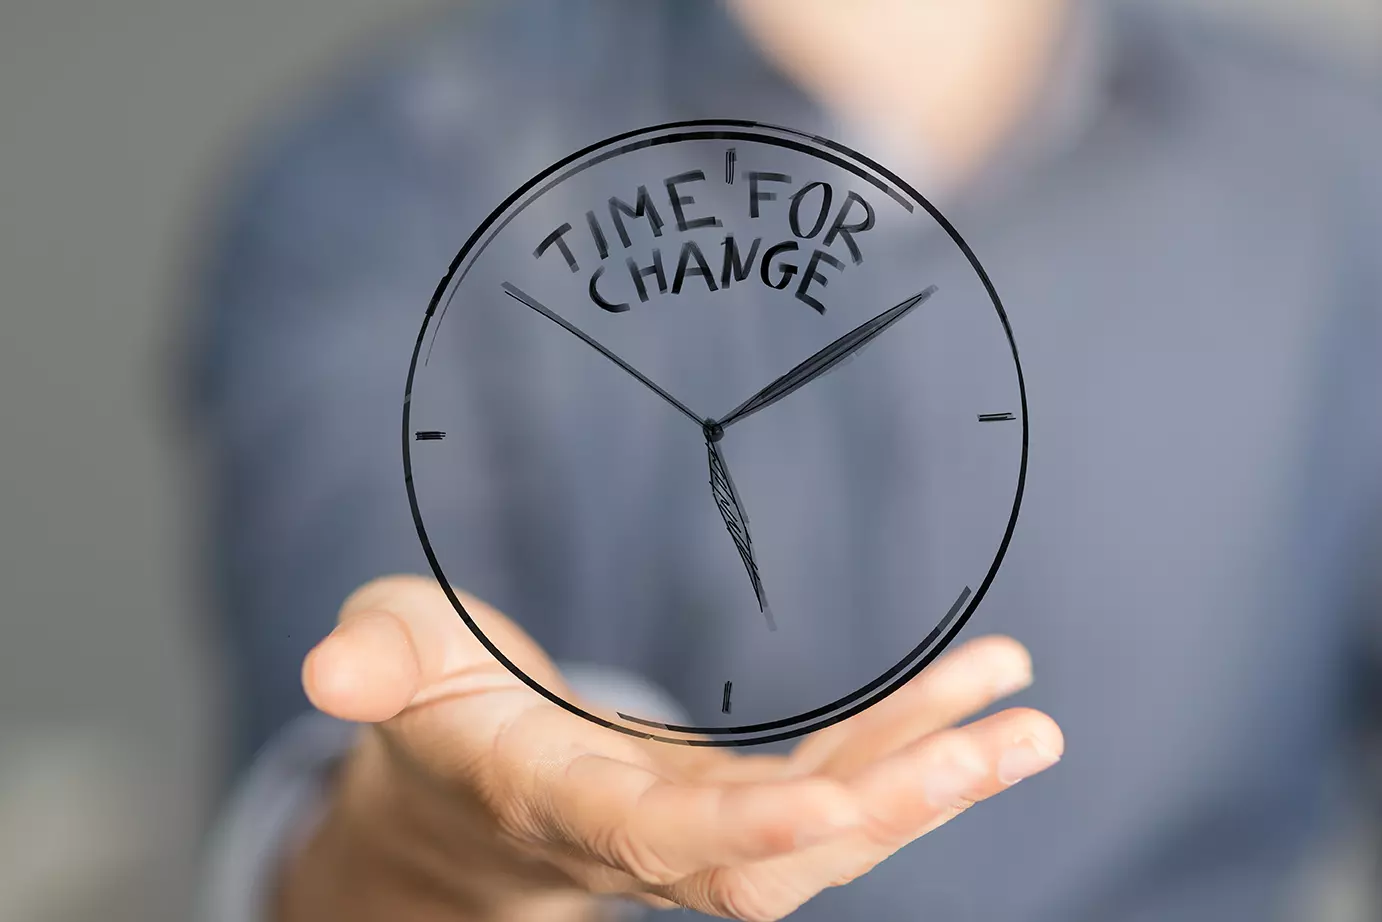 Mano sosteniendo reloj que dice: Time for change